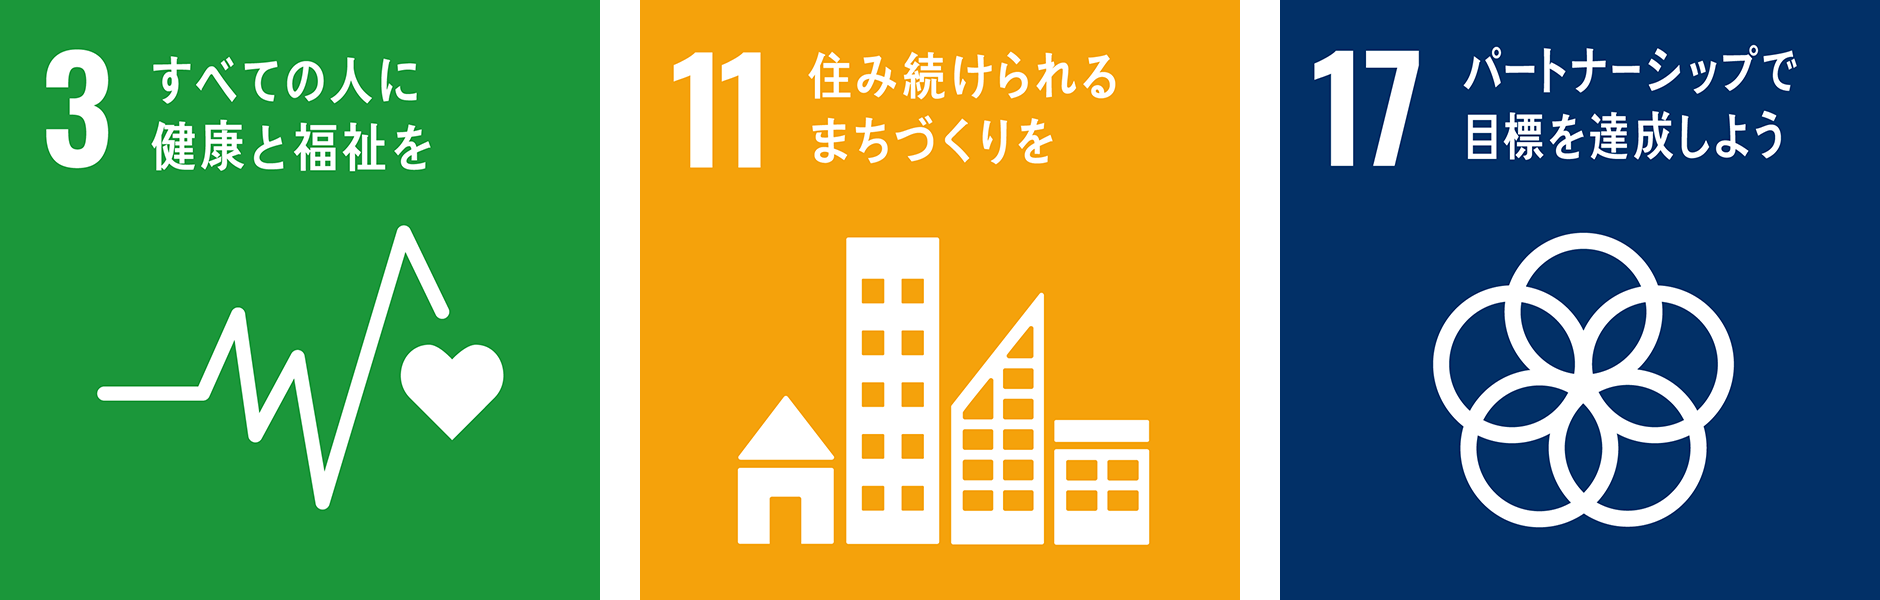 SDGs3,11,17번 로고